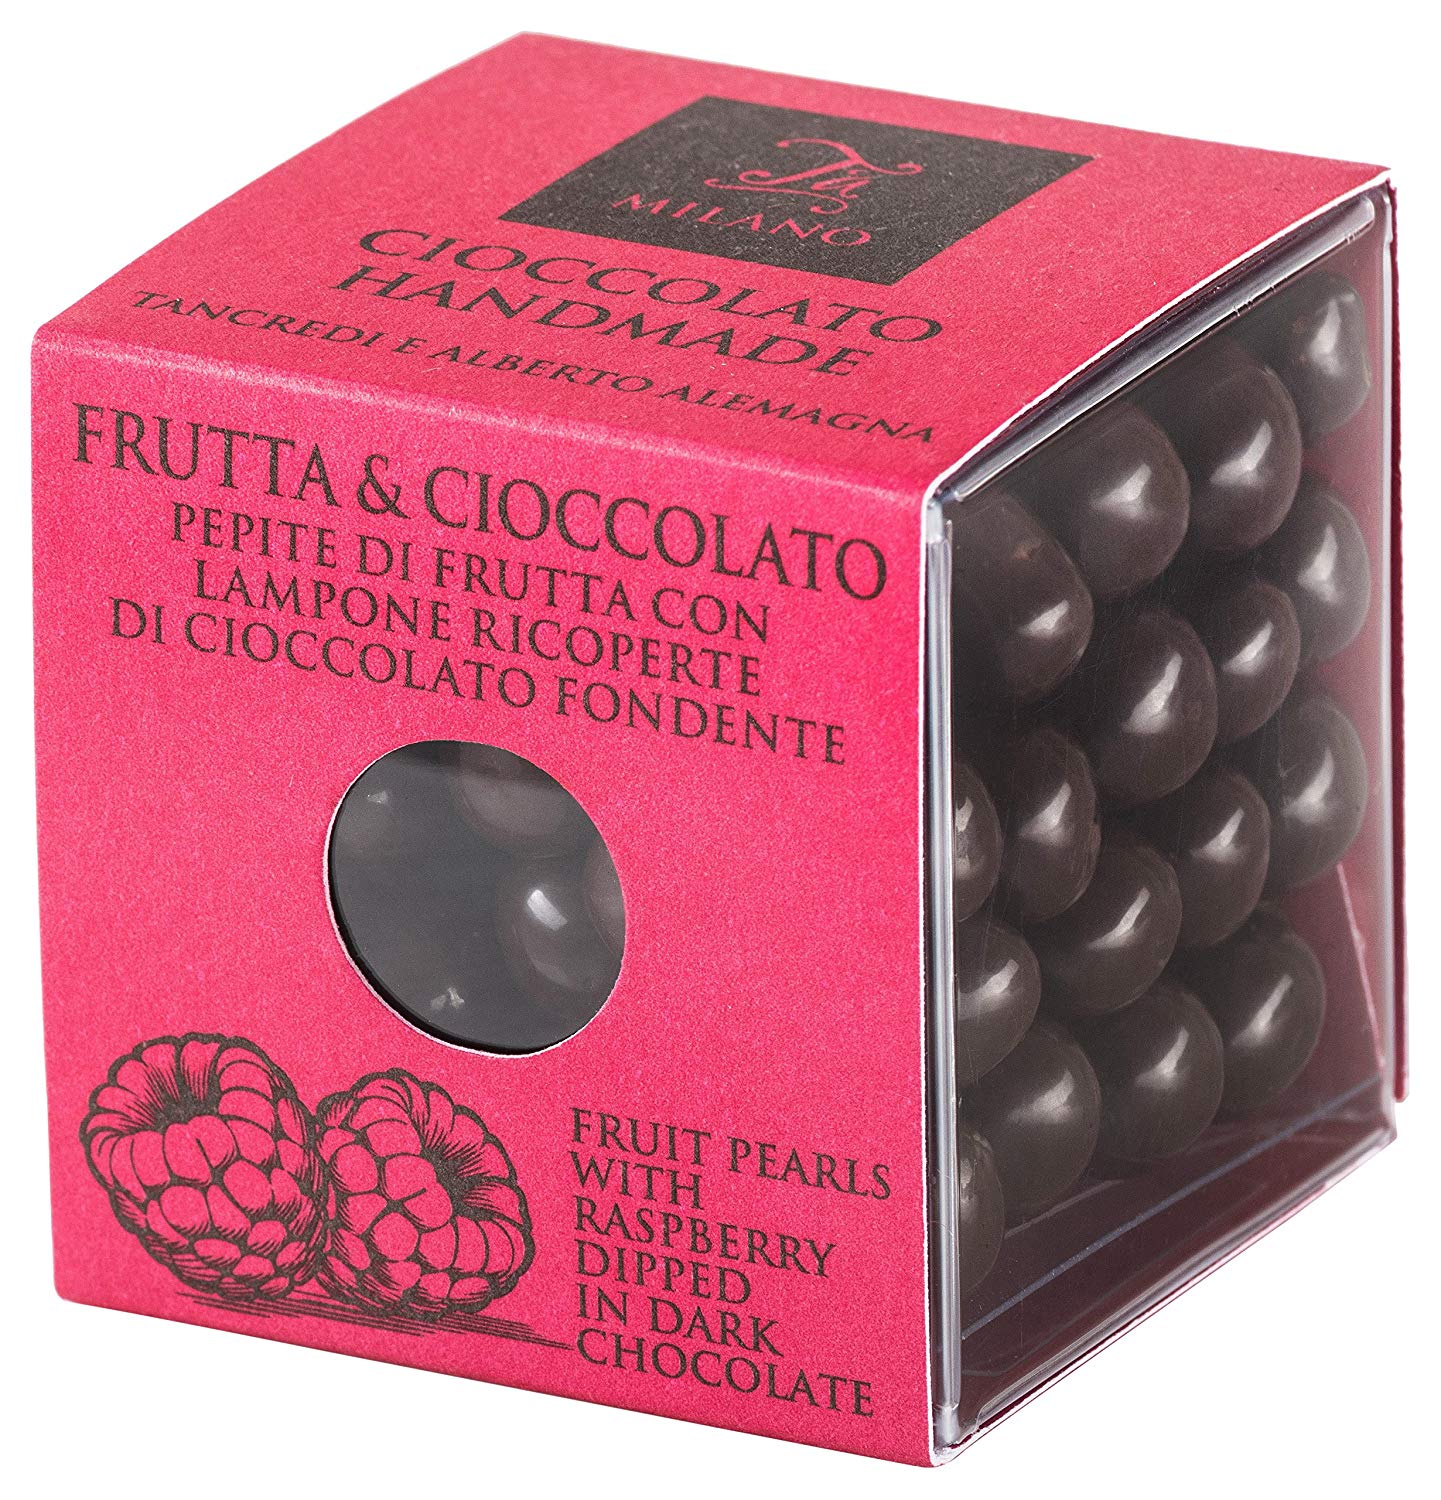  Bomboane cu ciocolata neagra si zmeura - Frutta & Cioccolato | T'a Milano 